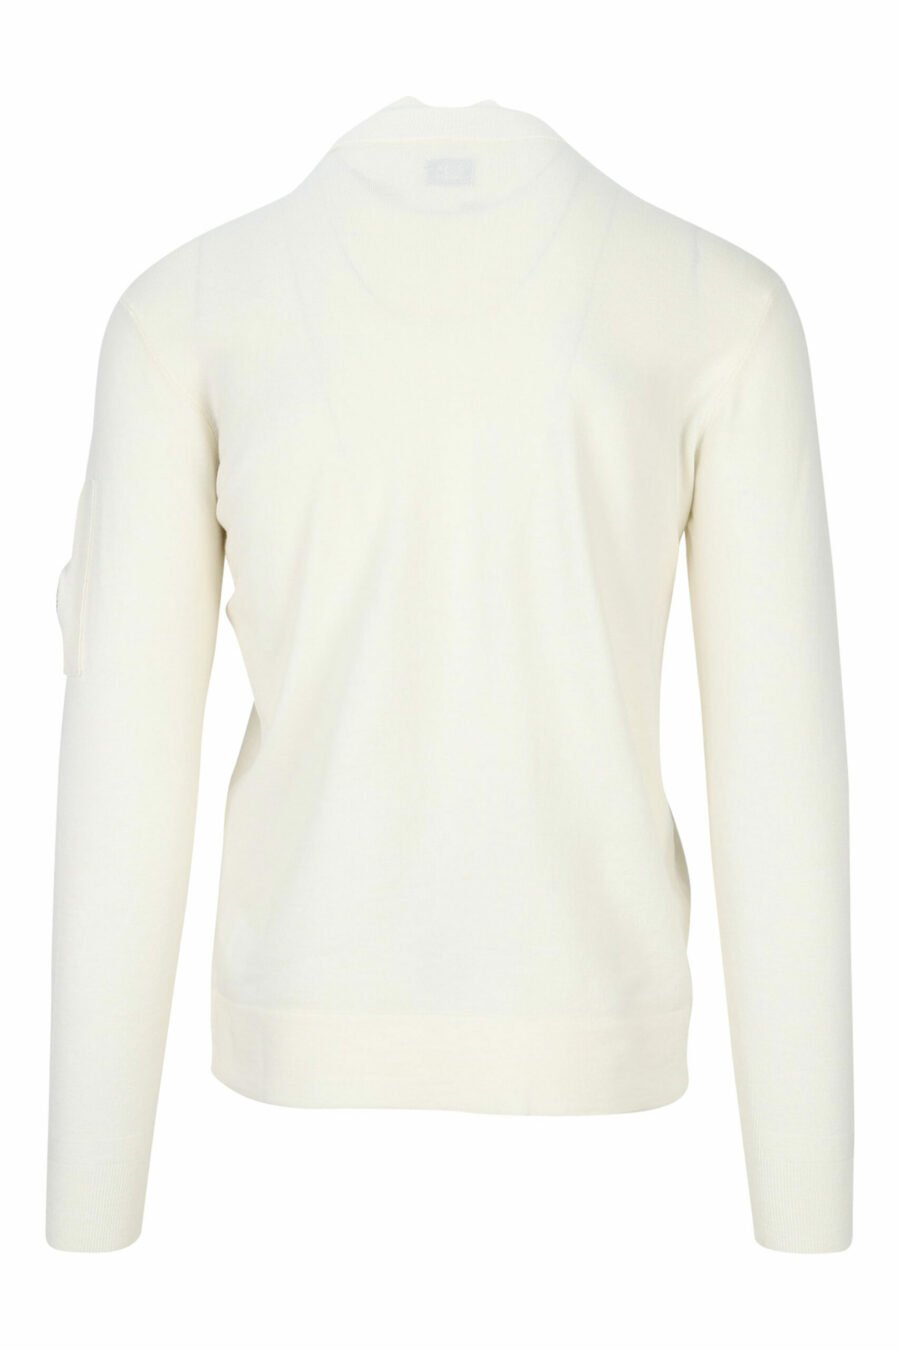 Jersey blanco de cuello alto con cremallera y logo lente lateral - 7620943601213 2 scaled